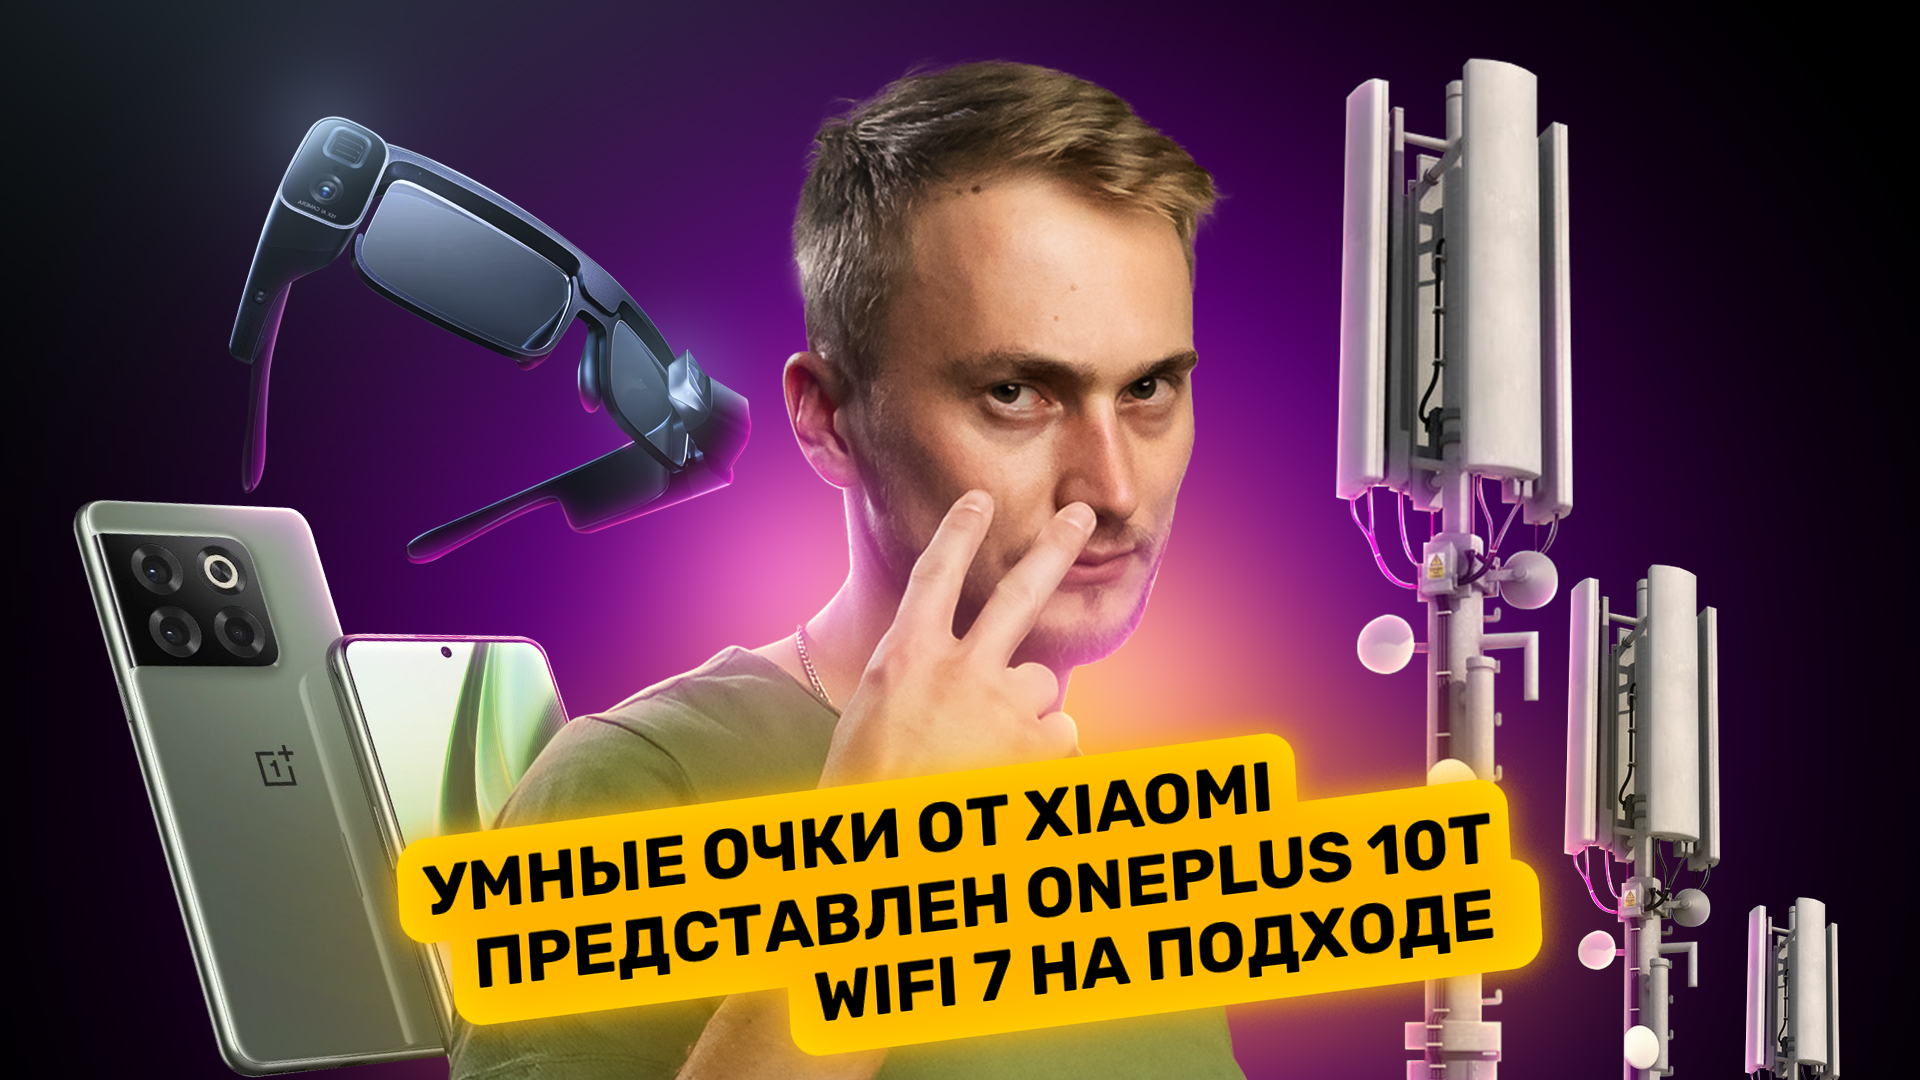 Умные очки Xiaomi, слив данных Почты России, сомнительный OnePlus 10T. Главные новости технологий!